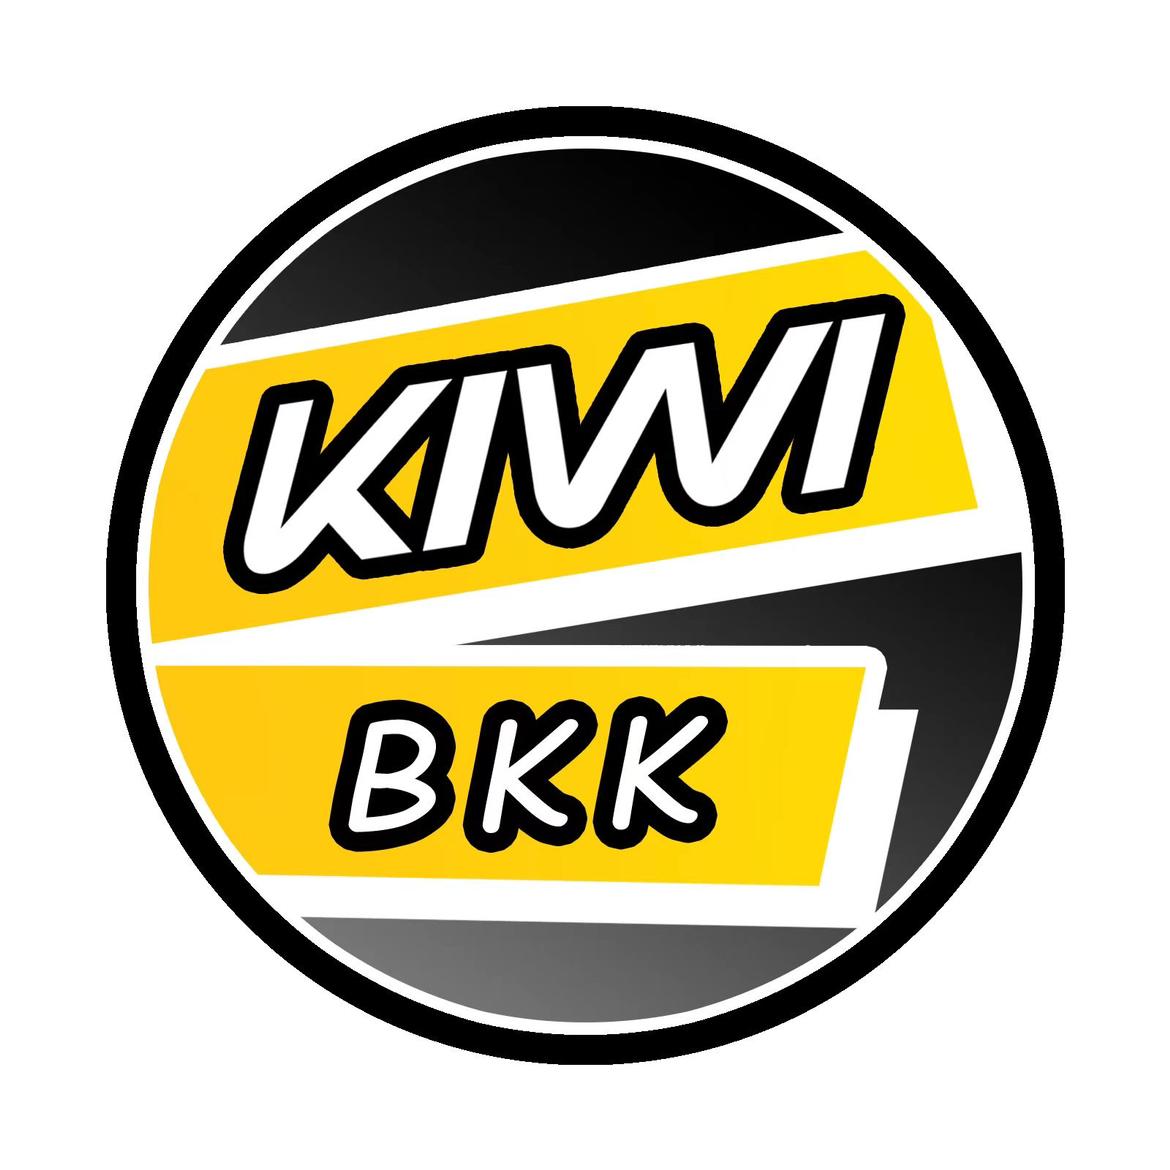 รูปภาพของ KIWI BKK